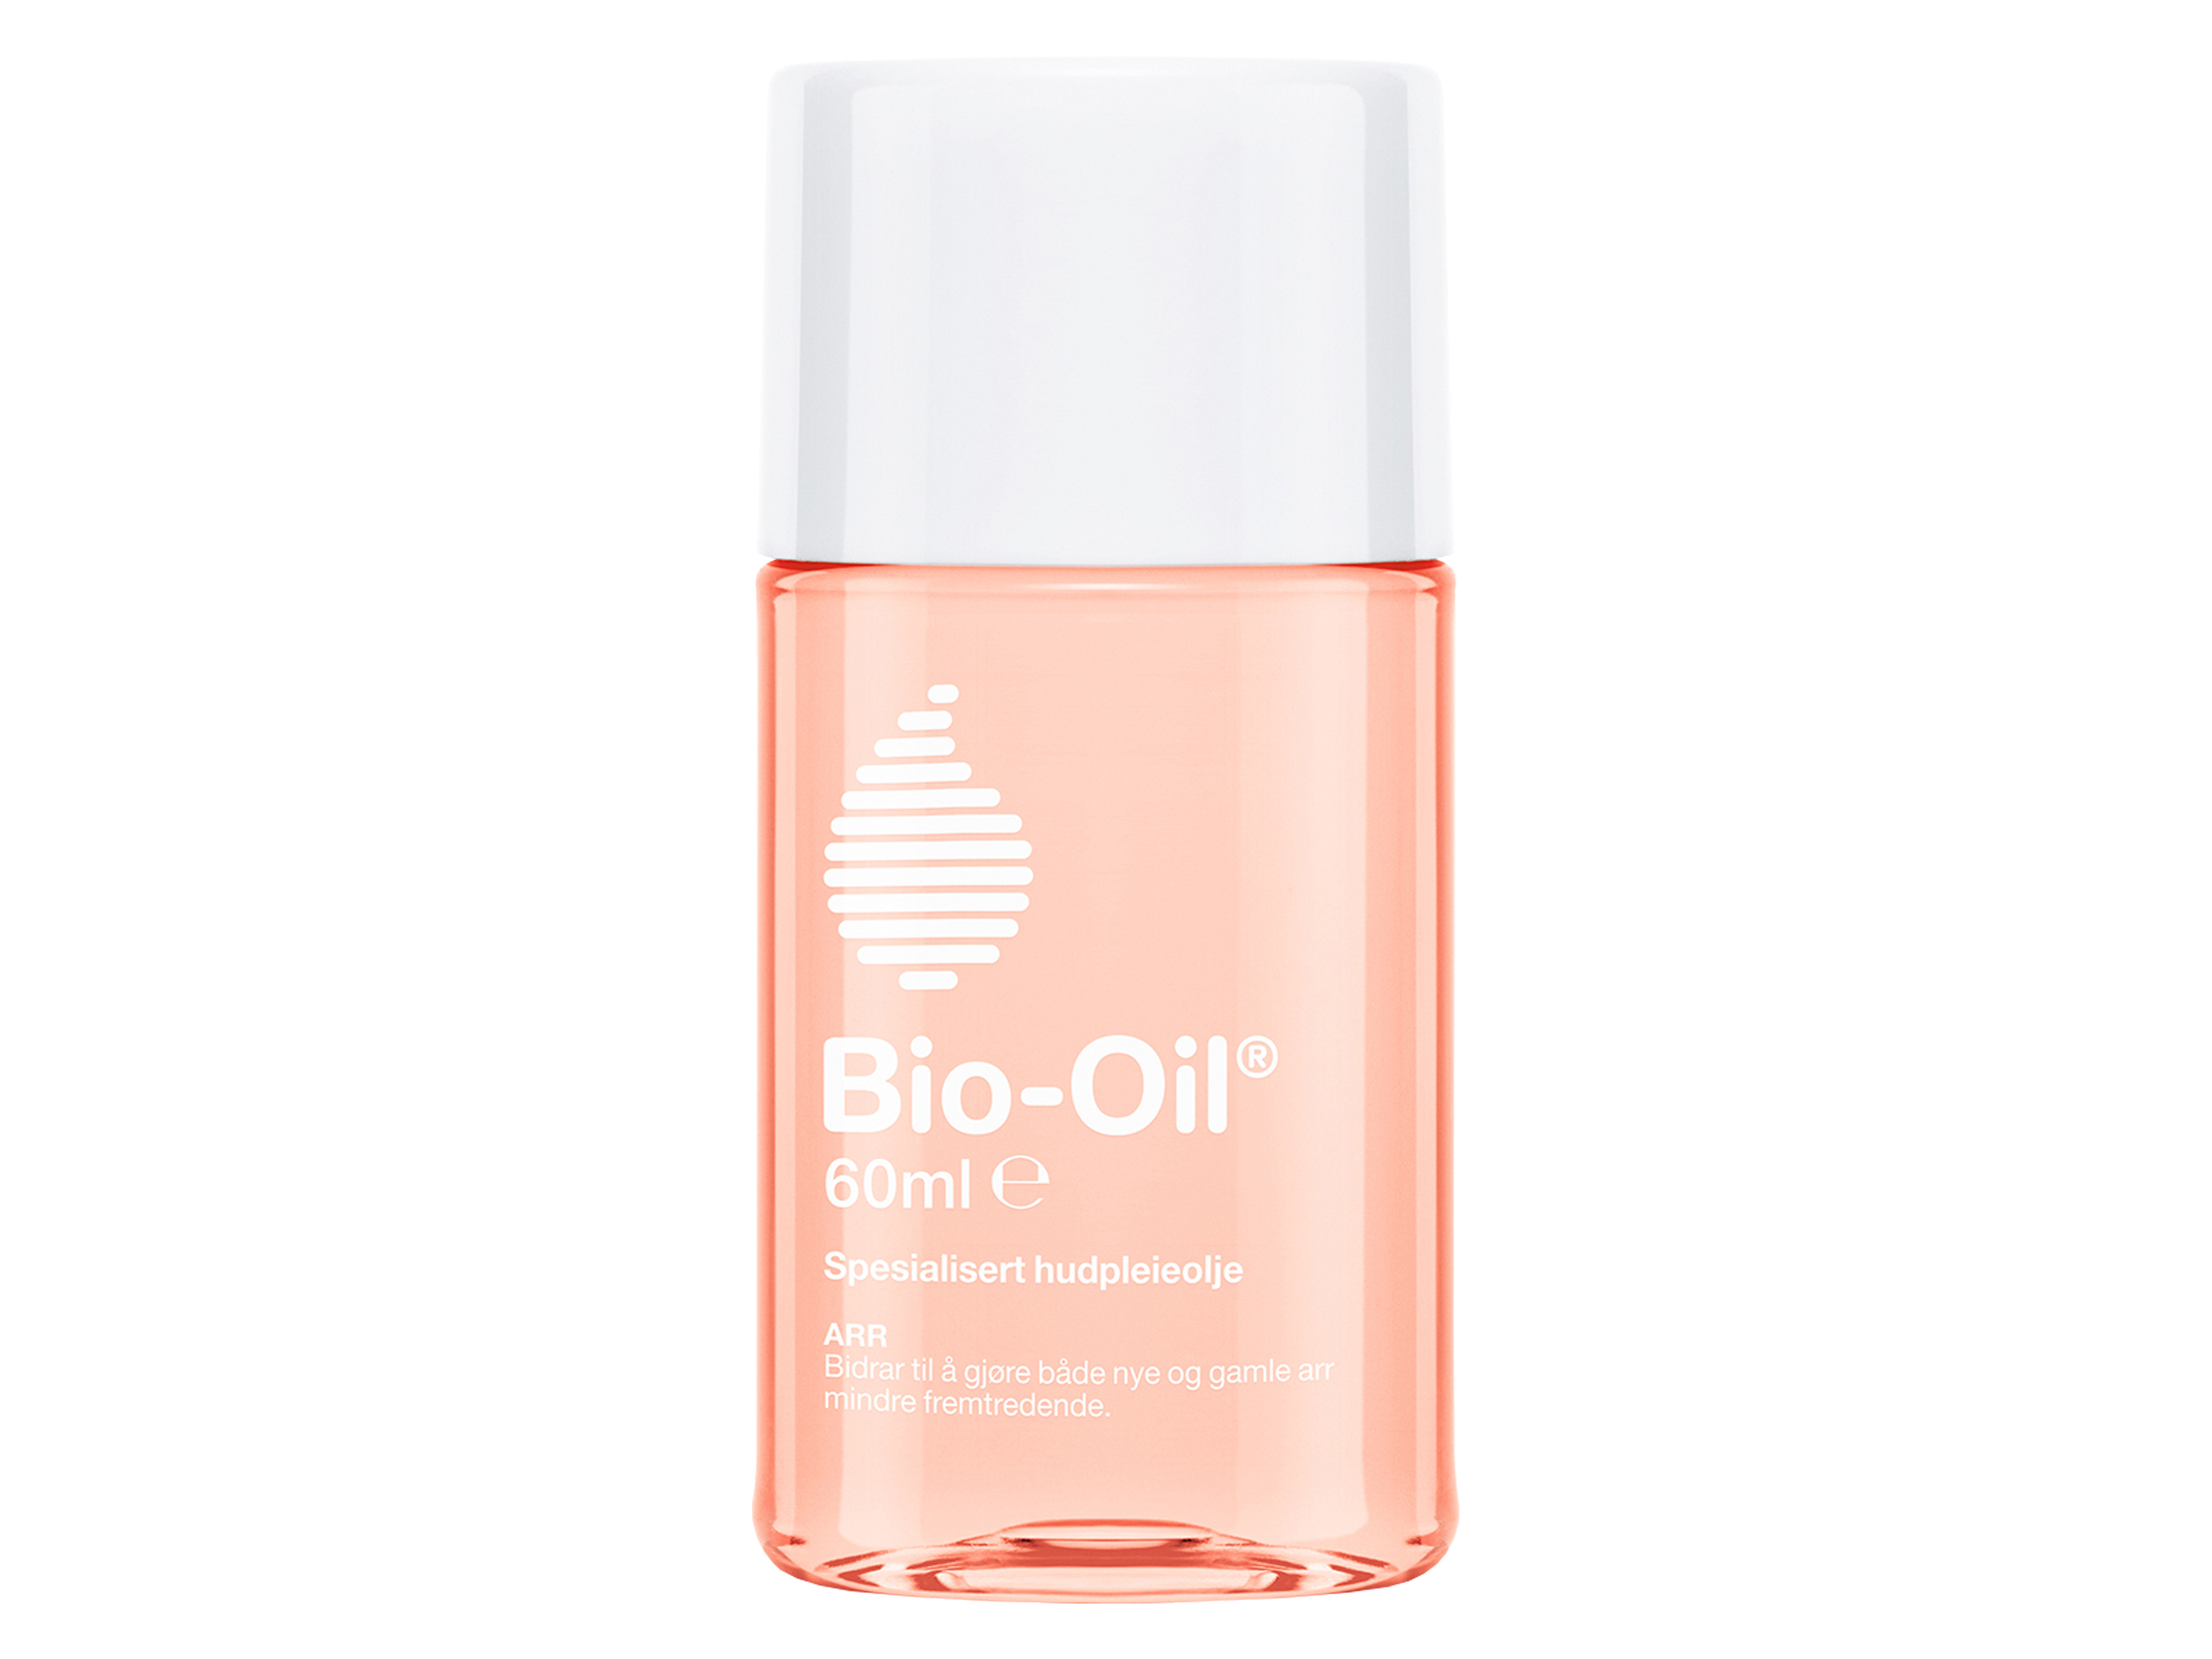 Bio-oil Spesialisert hudpleieolje, 60 ml